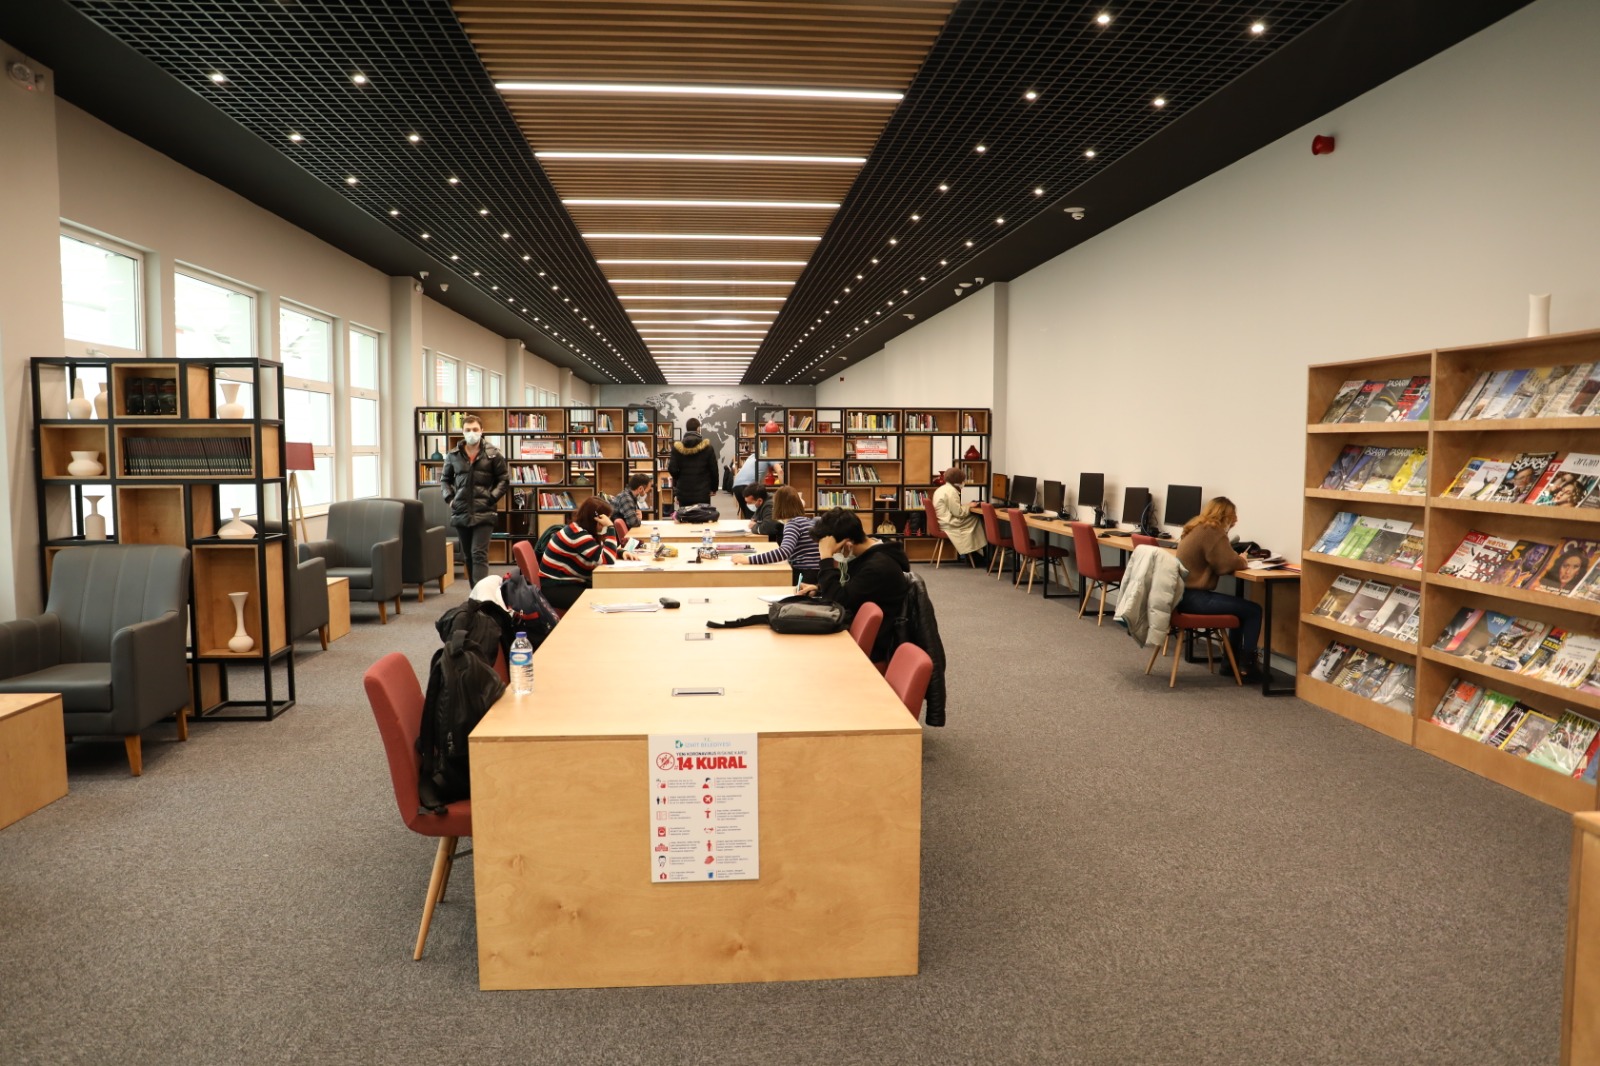  İzmit Belediyesi Kütüphanesi Kitapseverleri Bekliyor